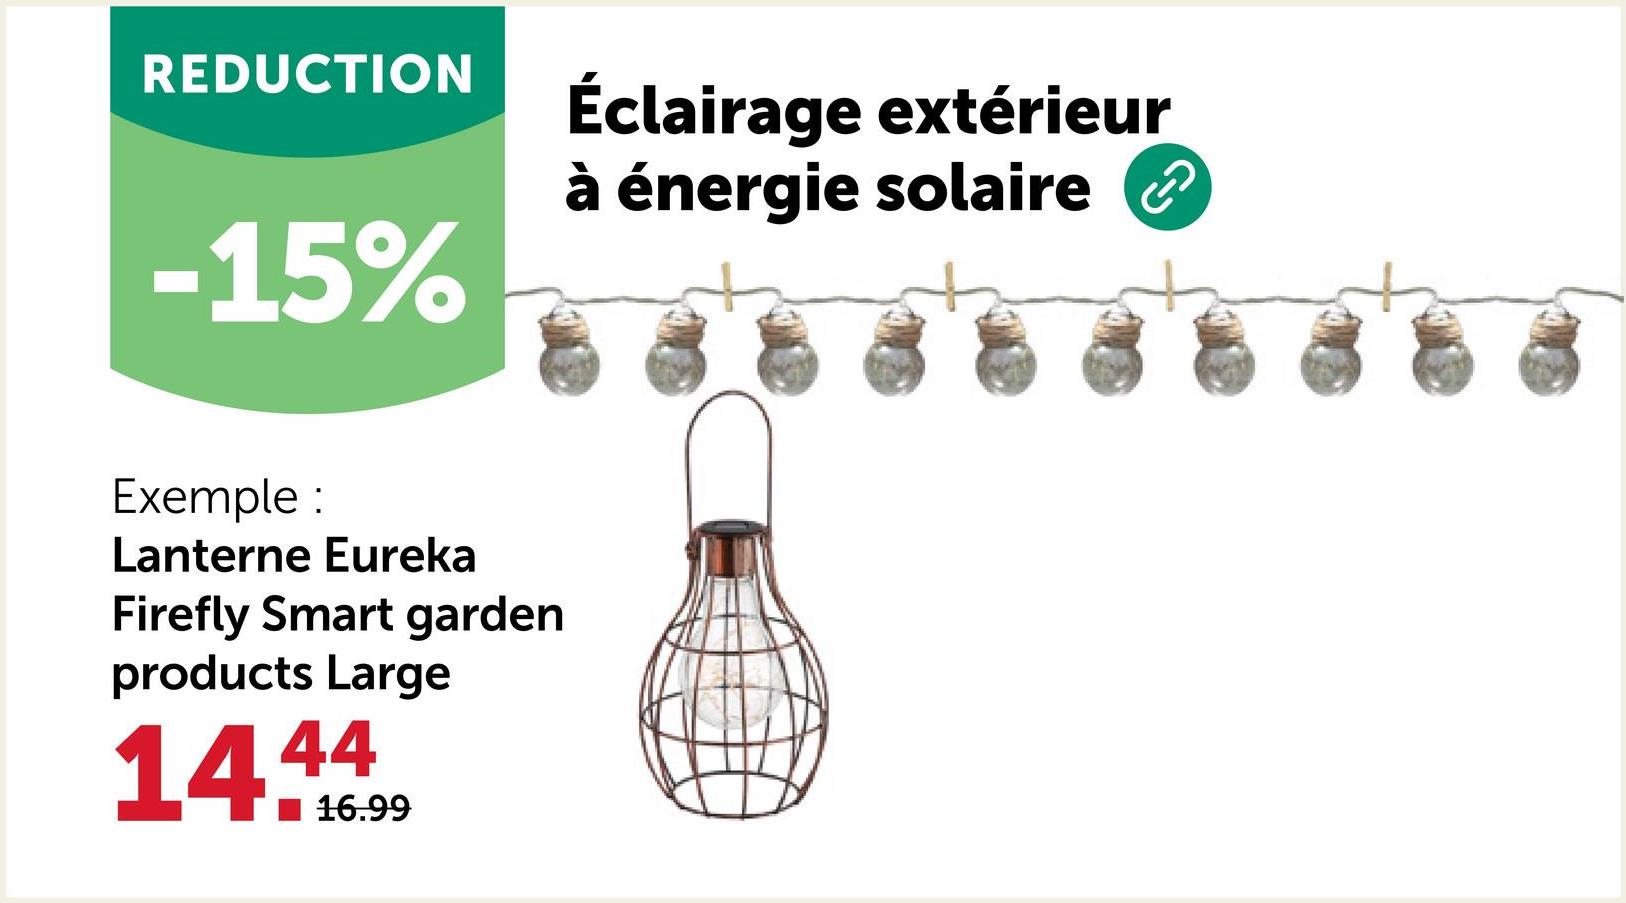 REDUCTION
-15%
Exemple :
Lanterne Eureka
Firefly Smart garden
products Large
14.4
16.99
Éclairage extérieur
à énergie solaire